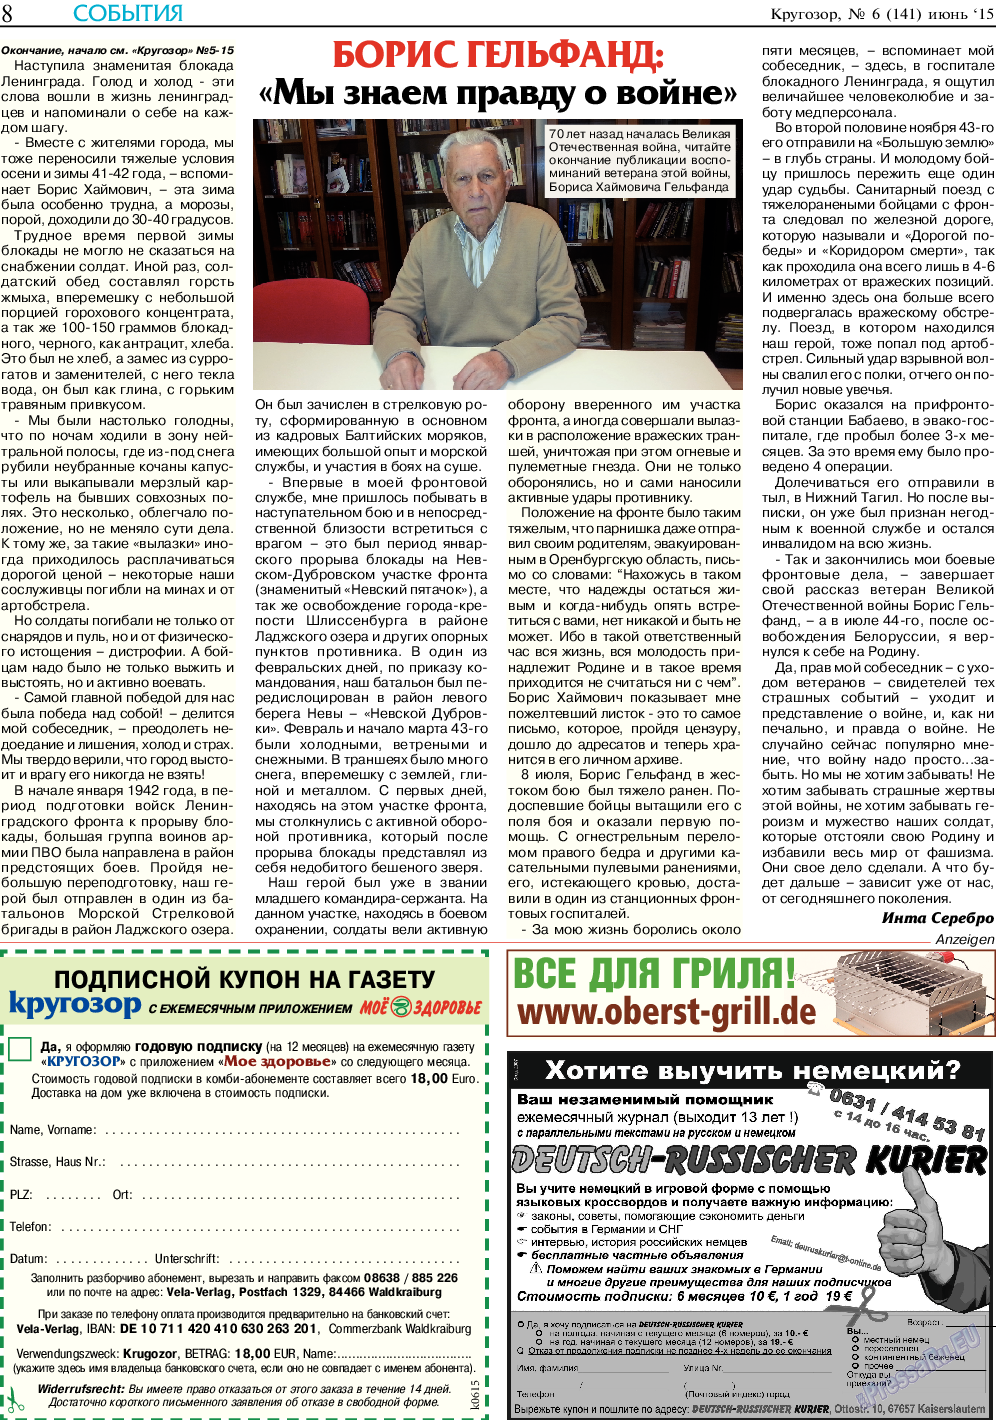 Кругозор, газета. 2015 №6 стр.8